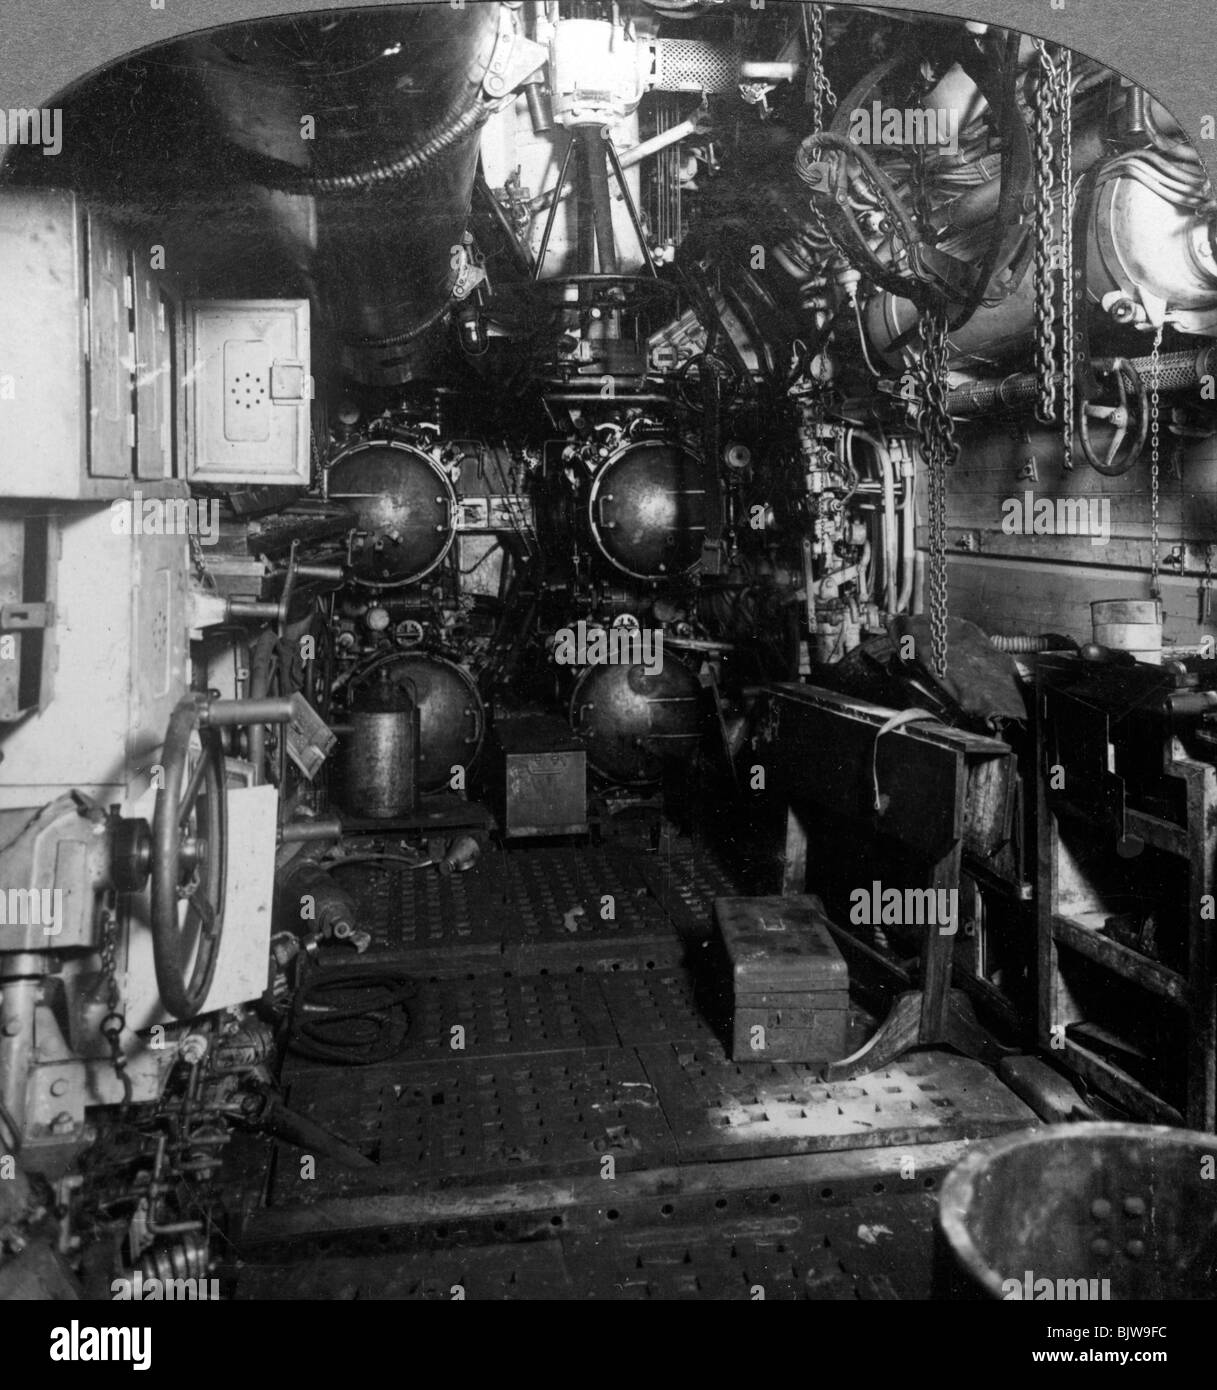 Quattro tubi a siluro nel vano anteriore di un U-boat tedesca, la prima guerra mondiale, 1918.Artista: realistico Viaggi Editori Foto Stock